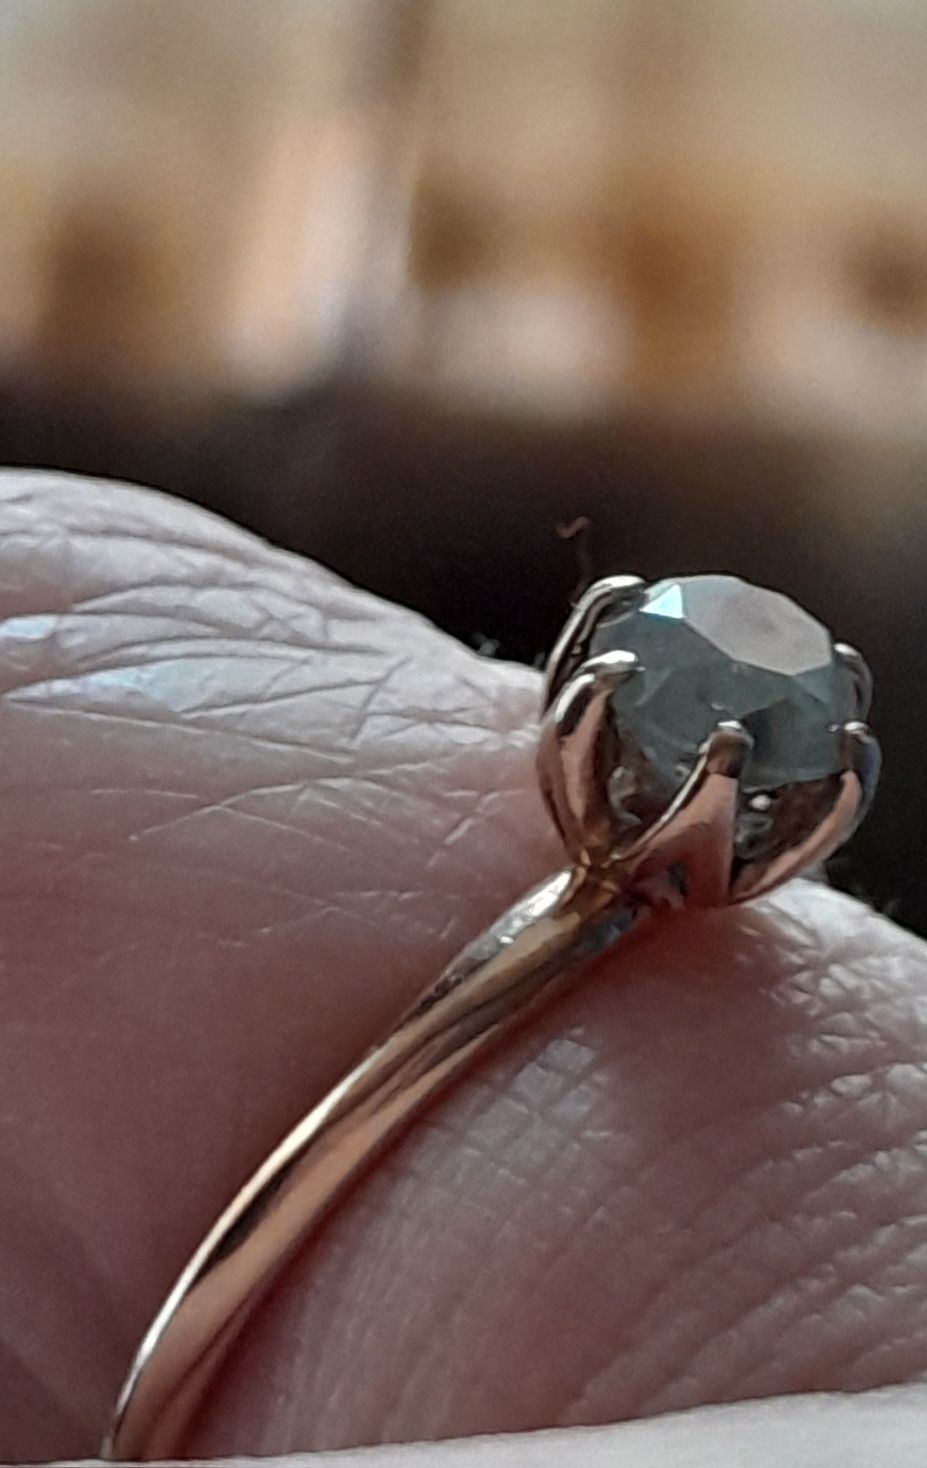 Кольцо с голубым бриллиантом